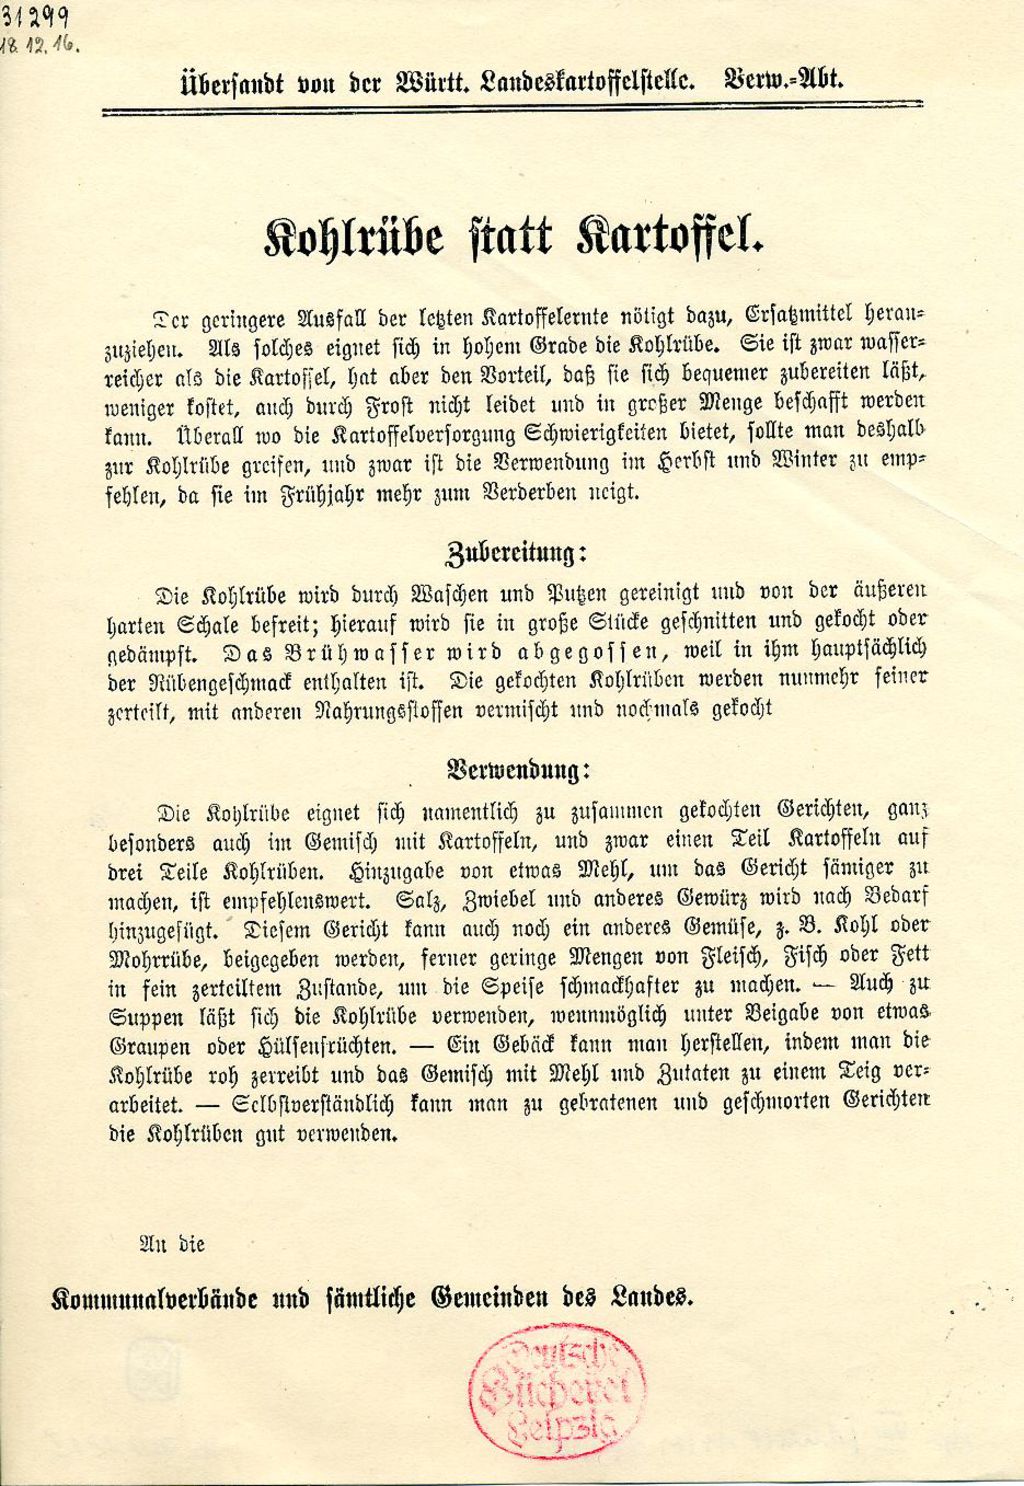 Flugblatt der Landeskartoffelstelle zum Kohlrübengebrauch, 1916